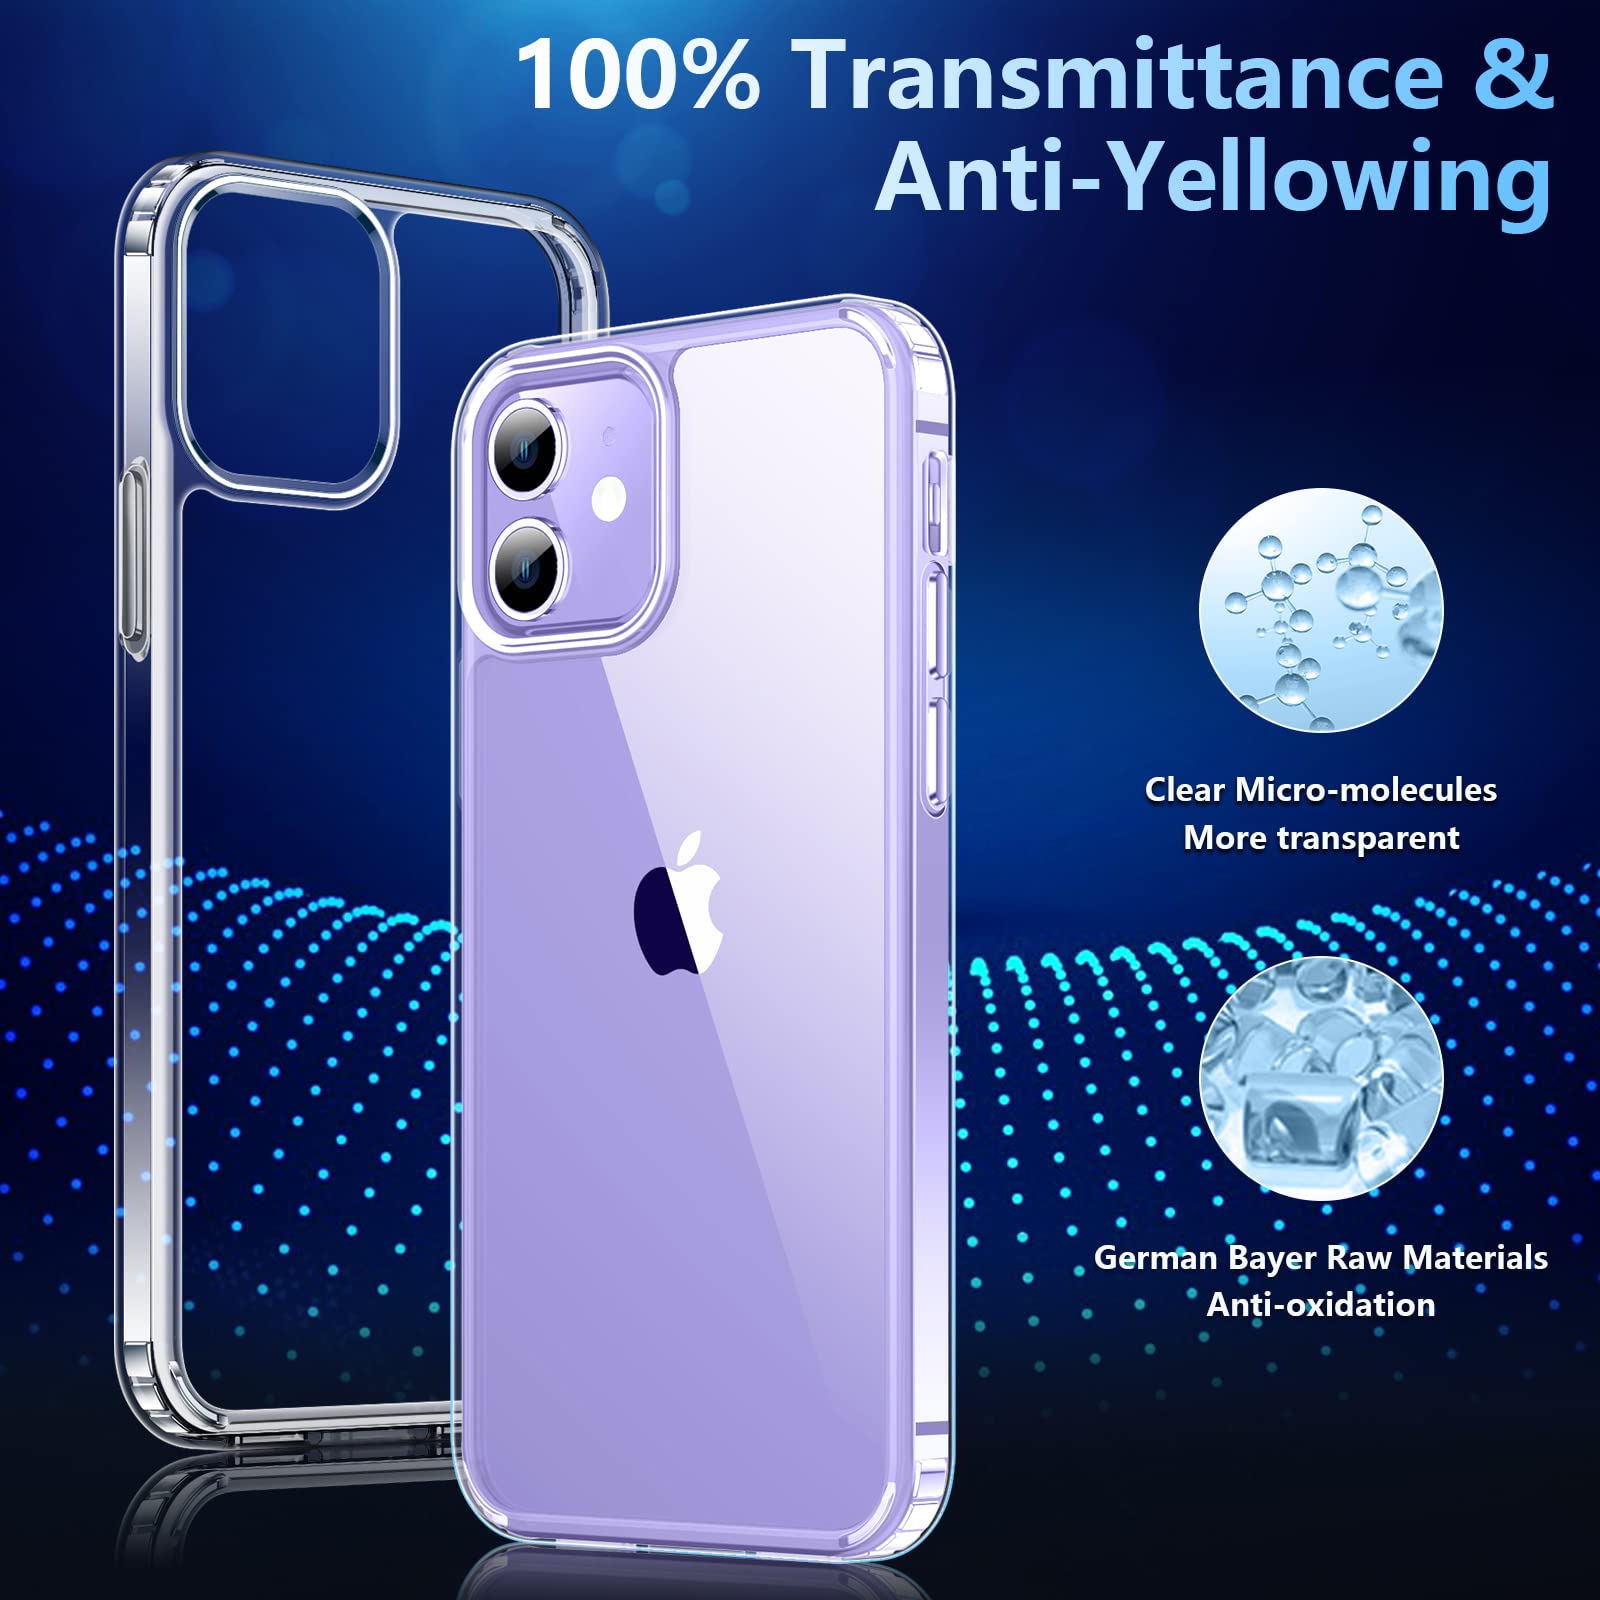 Temdan Slim Case Designed for iPhone 12 Case/Designed for iPhone 12 Pro Case -Transparent